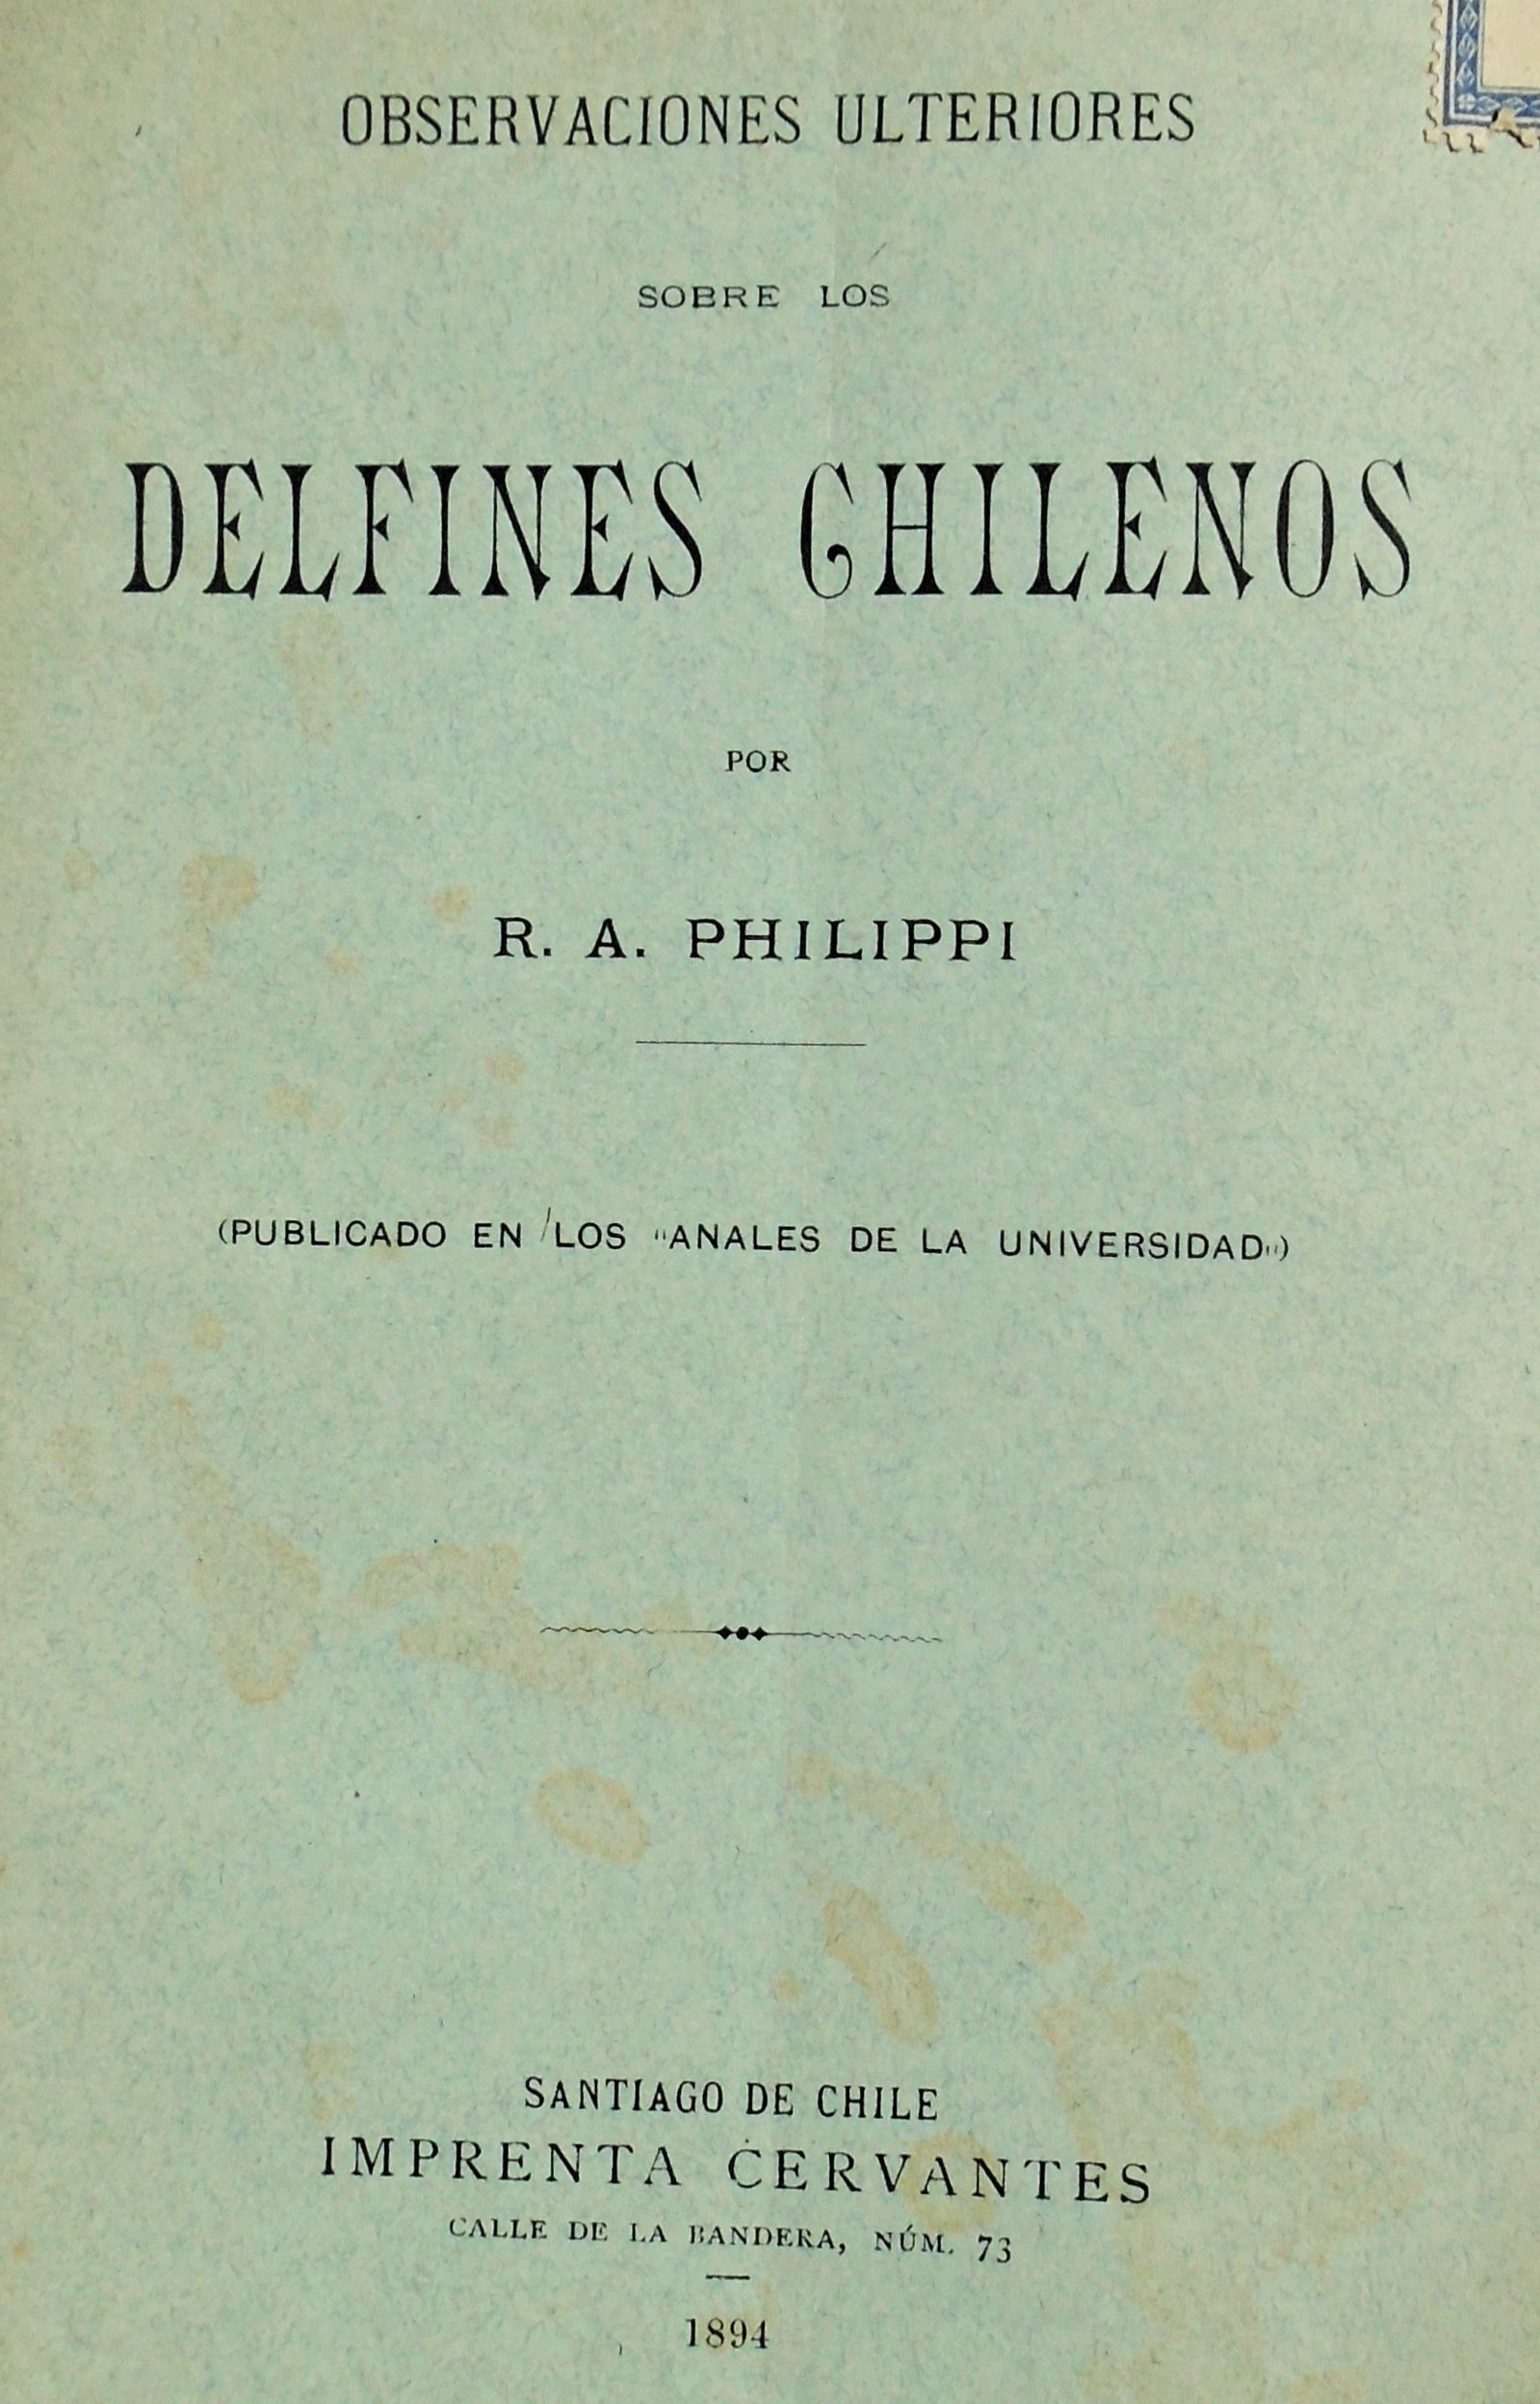 R. A. Philippi - Observaciones ulteriores sobre los delfines chilenos